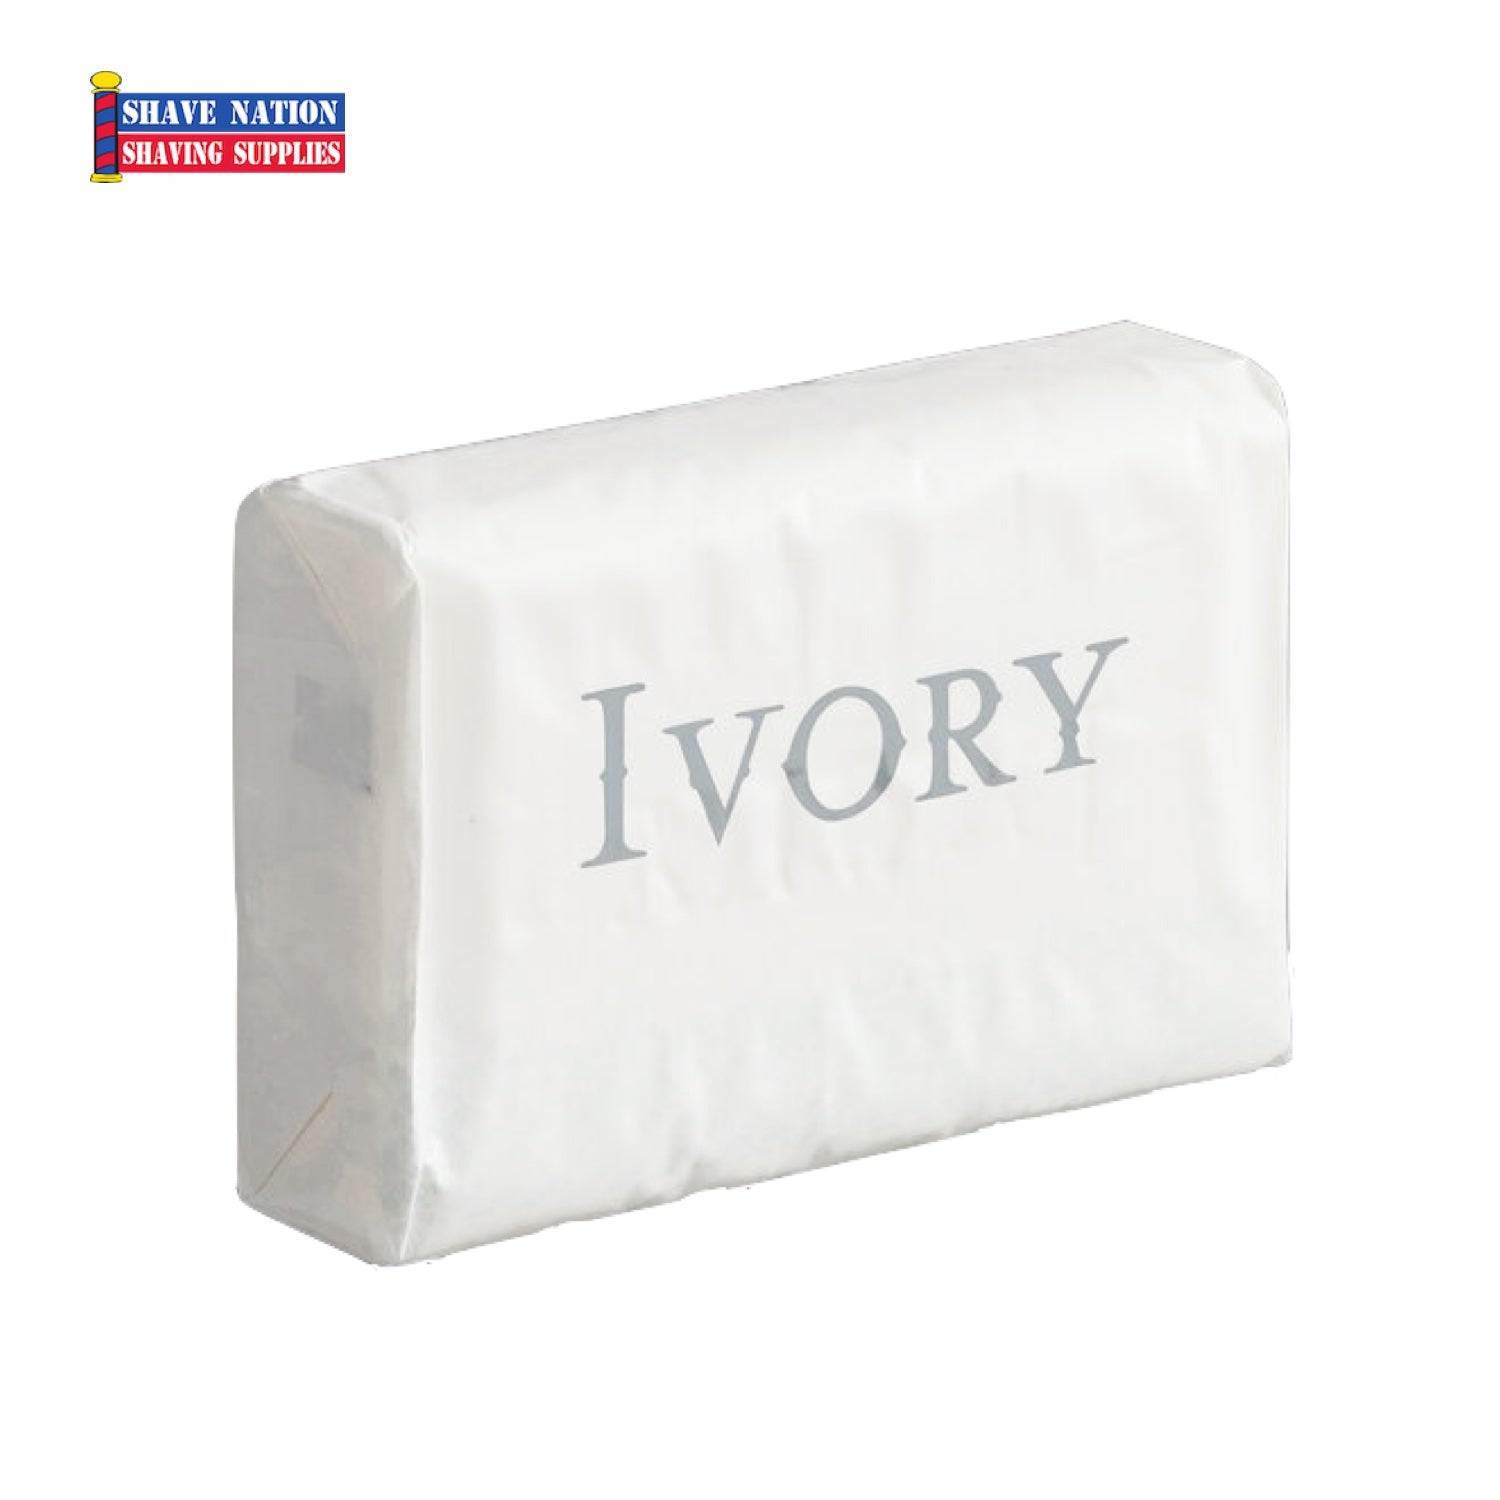 https://shavenation.com/cdn/shop/products/ivory-original-bar-soap-single-shave-nation.jpg?v=1663632625